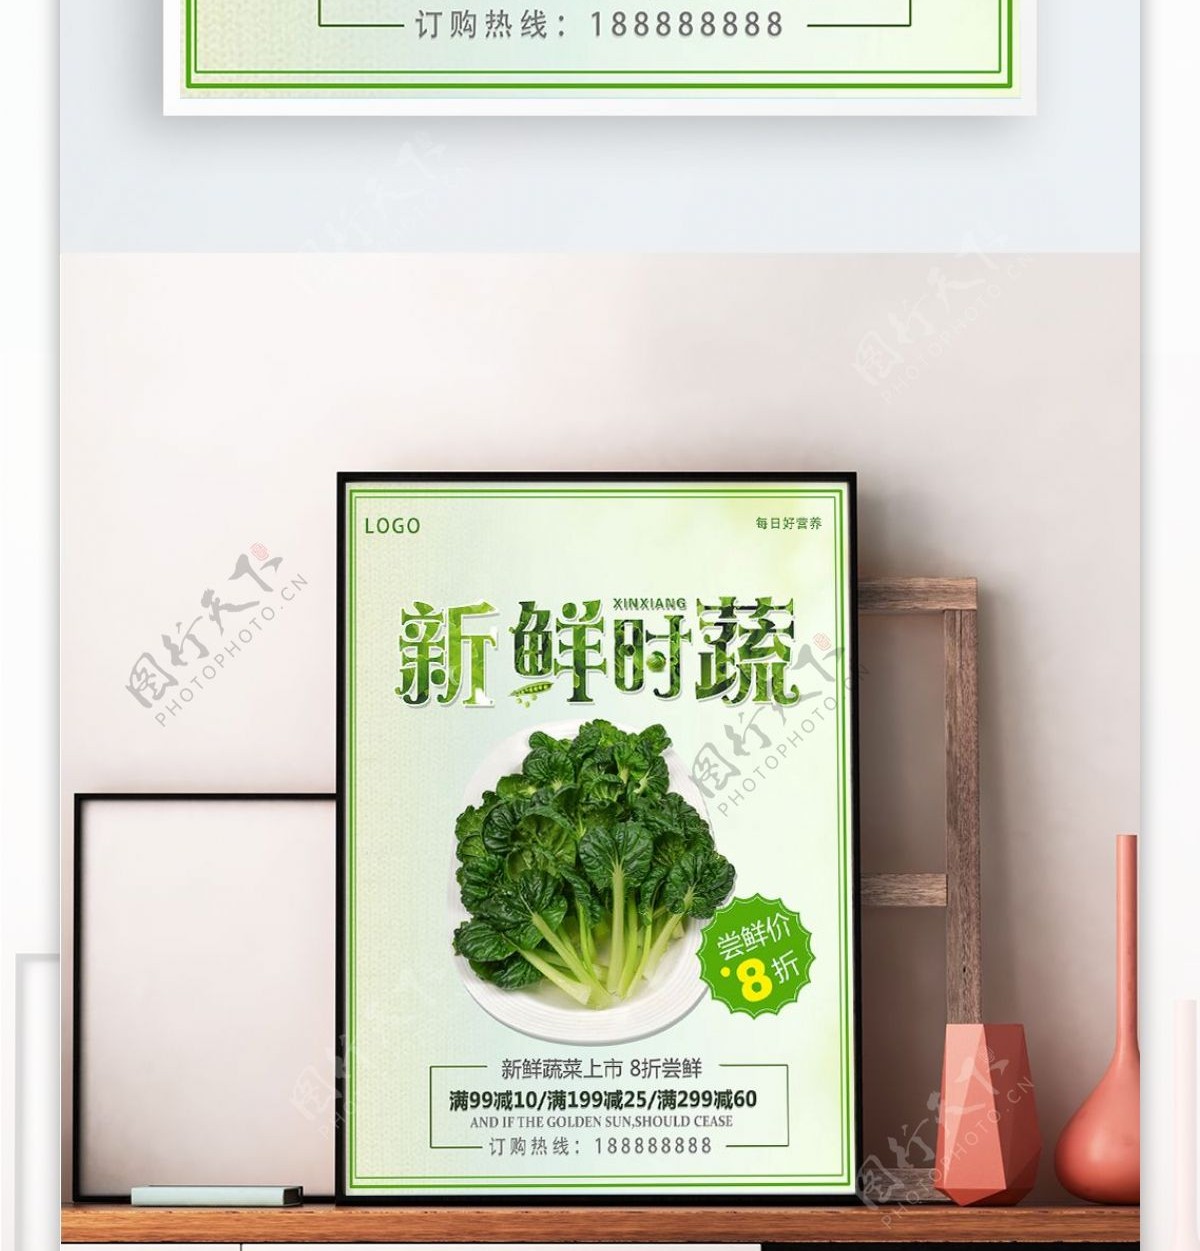 新鲜蔬菜海报设计